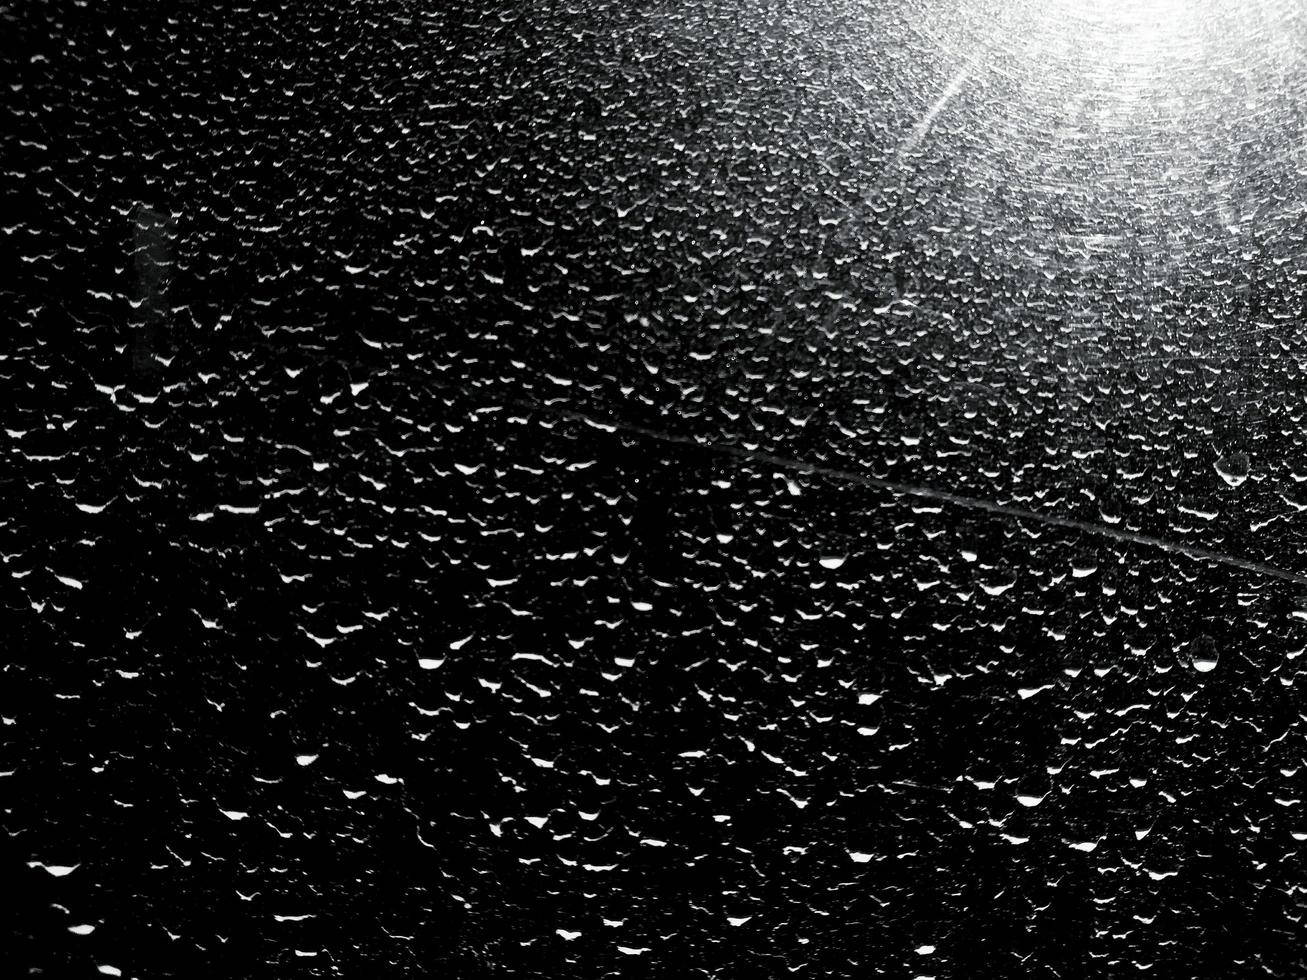 stofdoek of regendruppel op de metalen deur met licht in zwart-wit stijl. achtergrond en structuurconcept foto